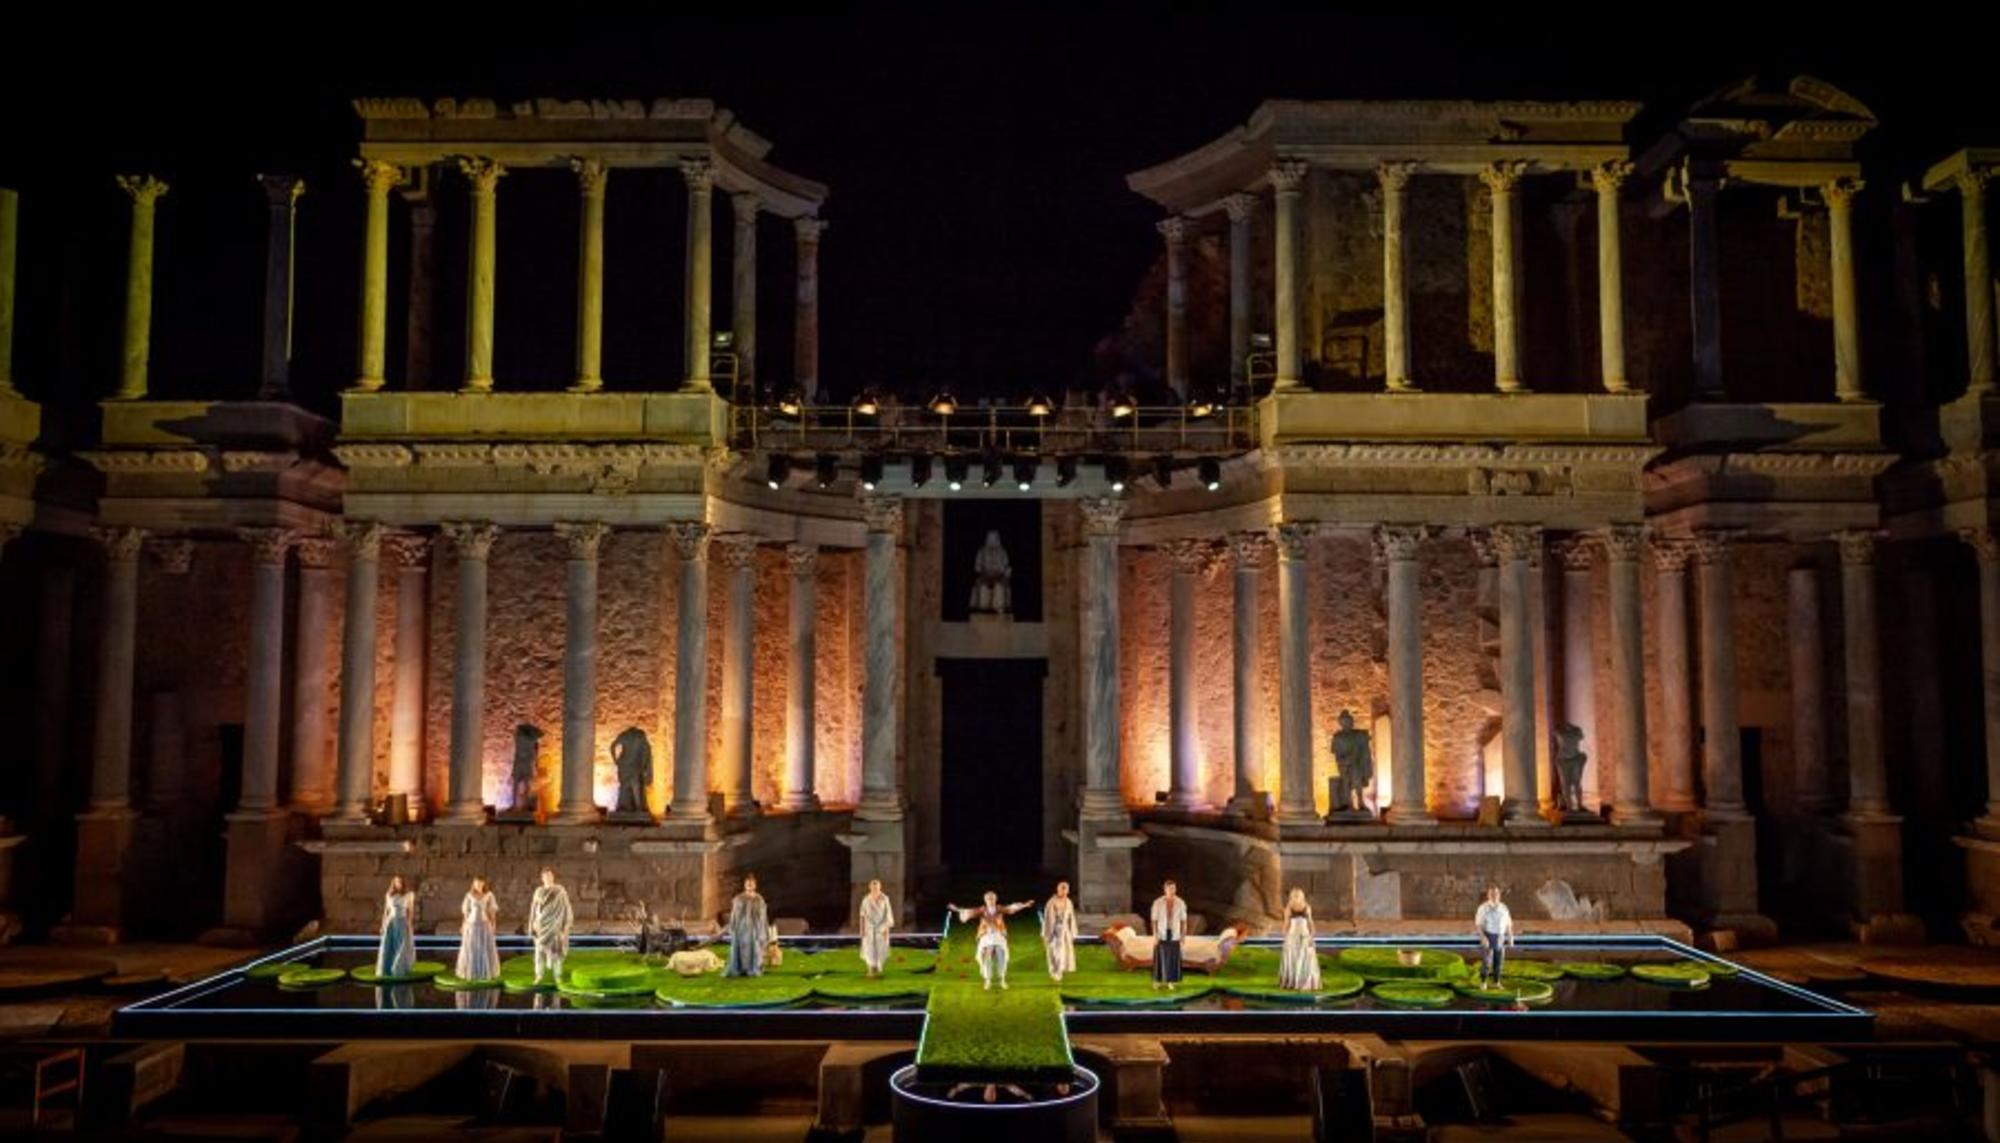  Teatro clásico de Mérida en el Teatro Romano